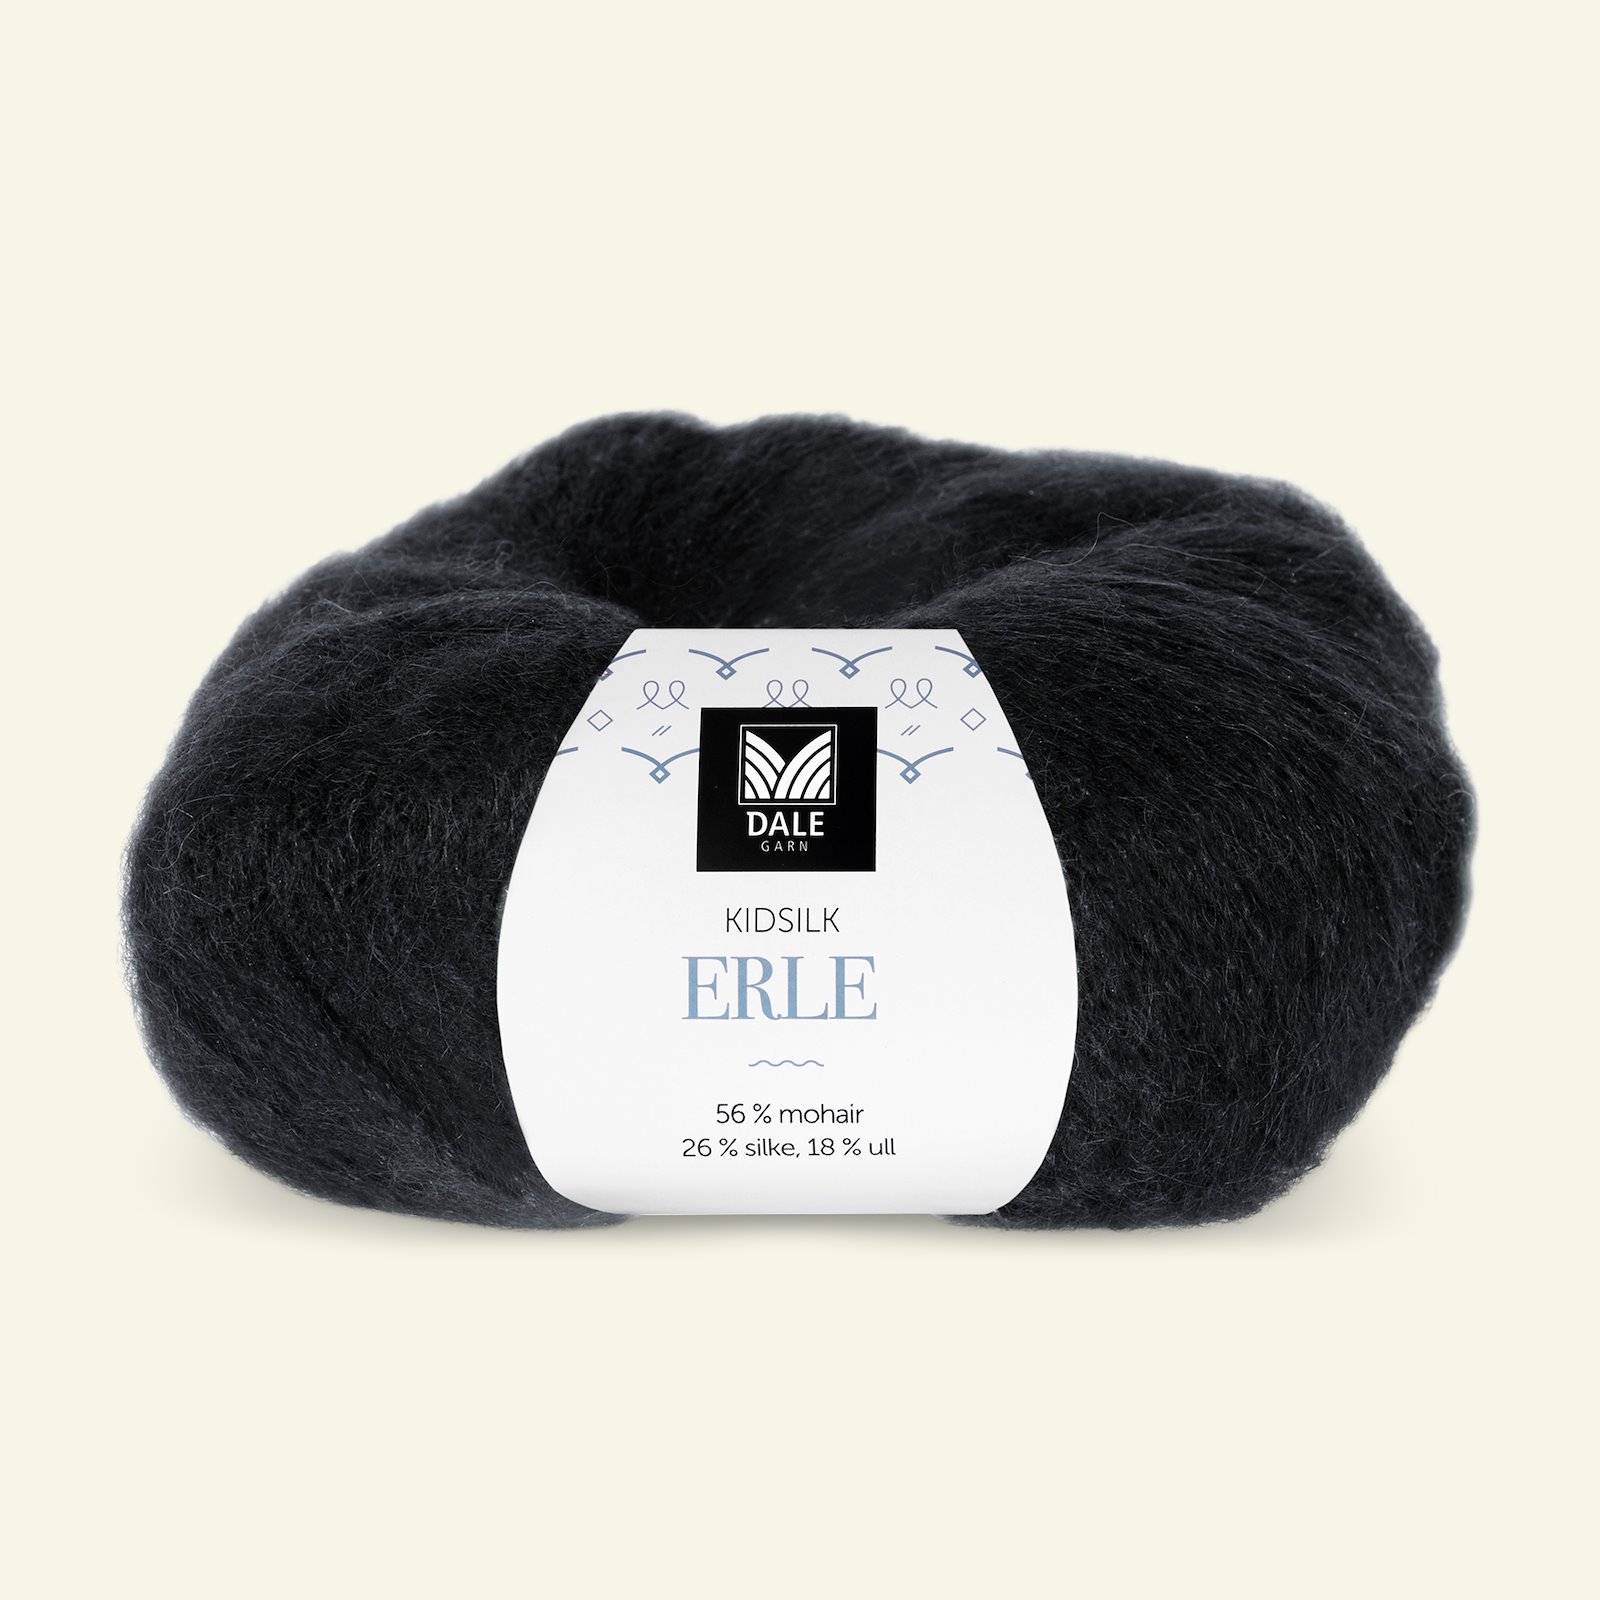 Dale Garn, silk mohair wool yarn "Kidsilk Erle", brown (0090) 90000776_pack